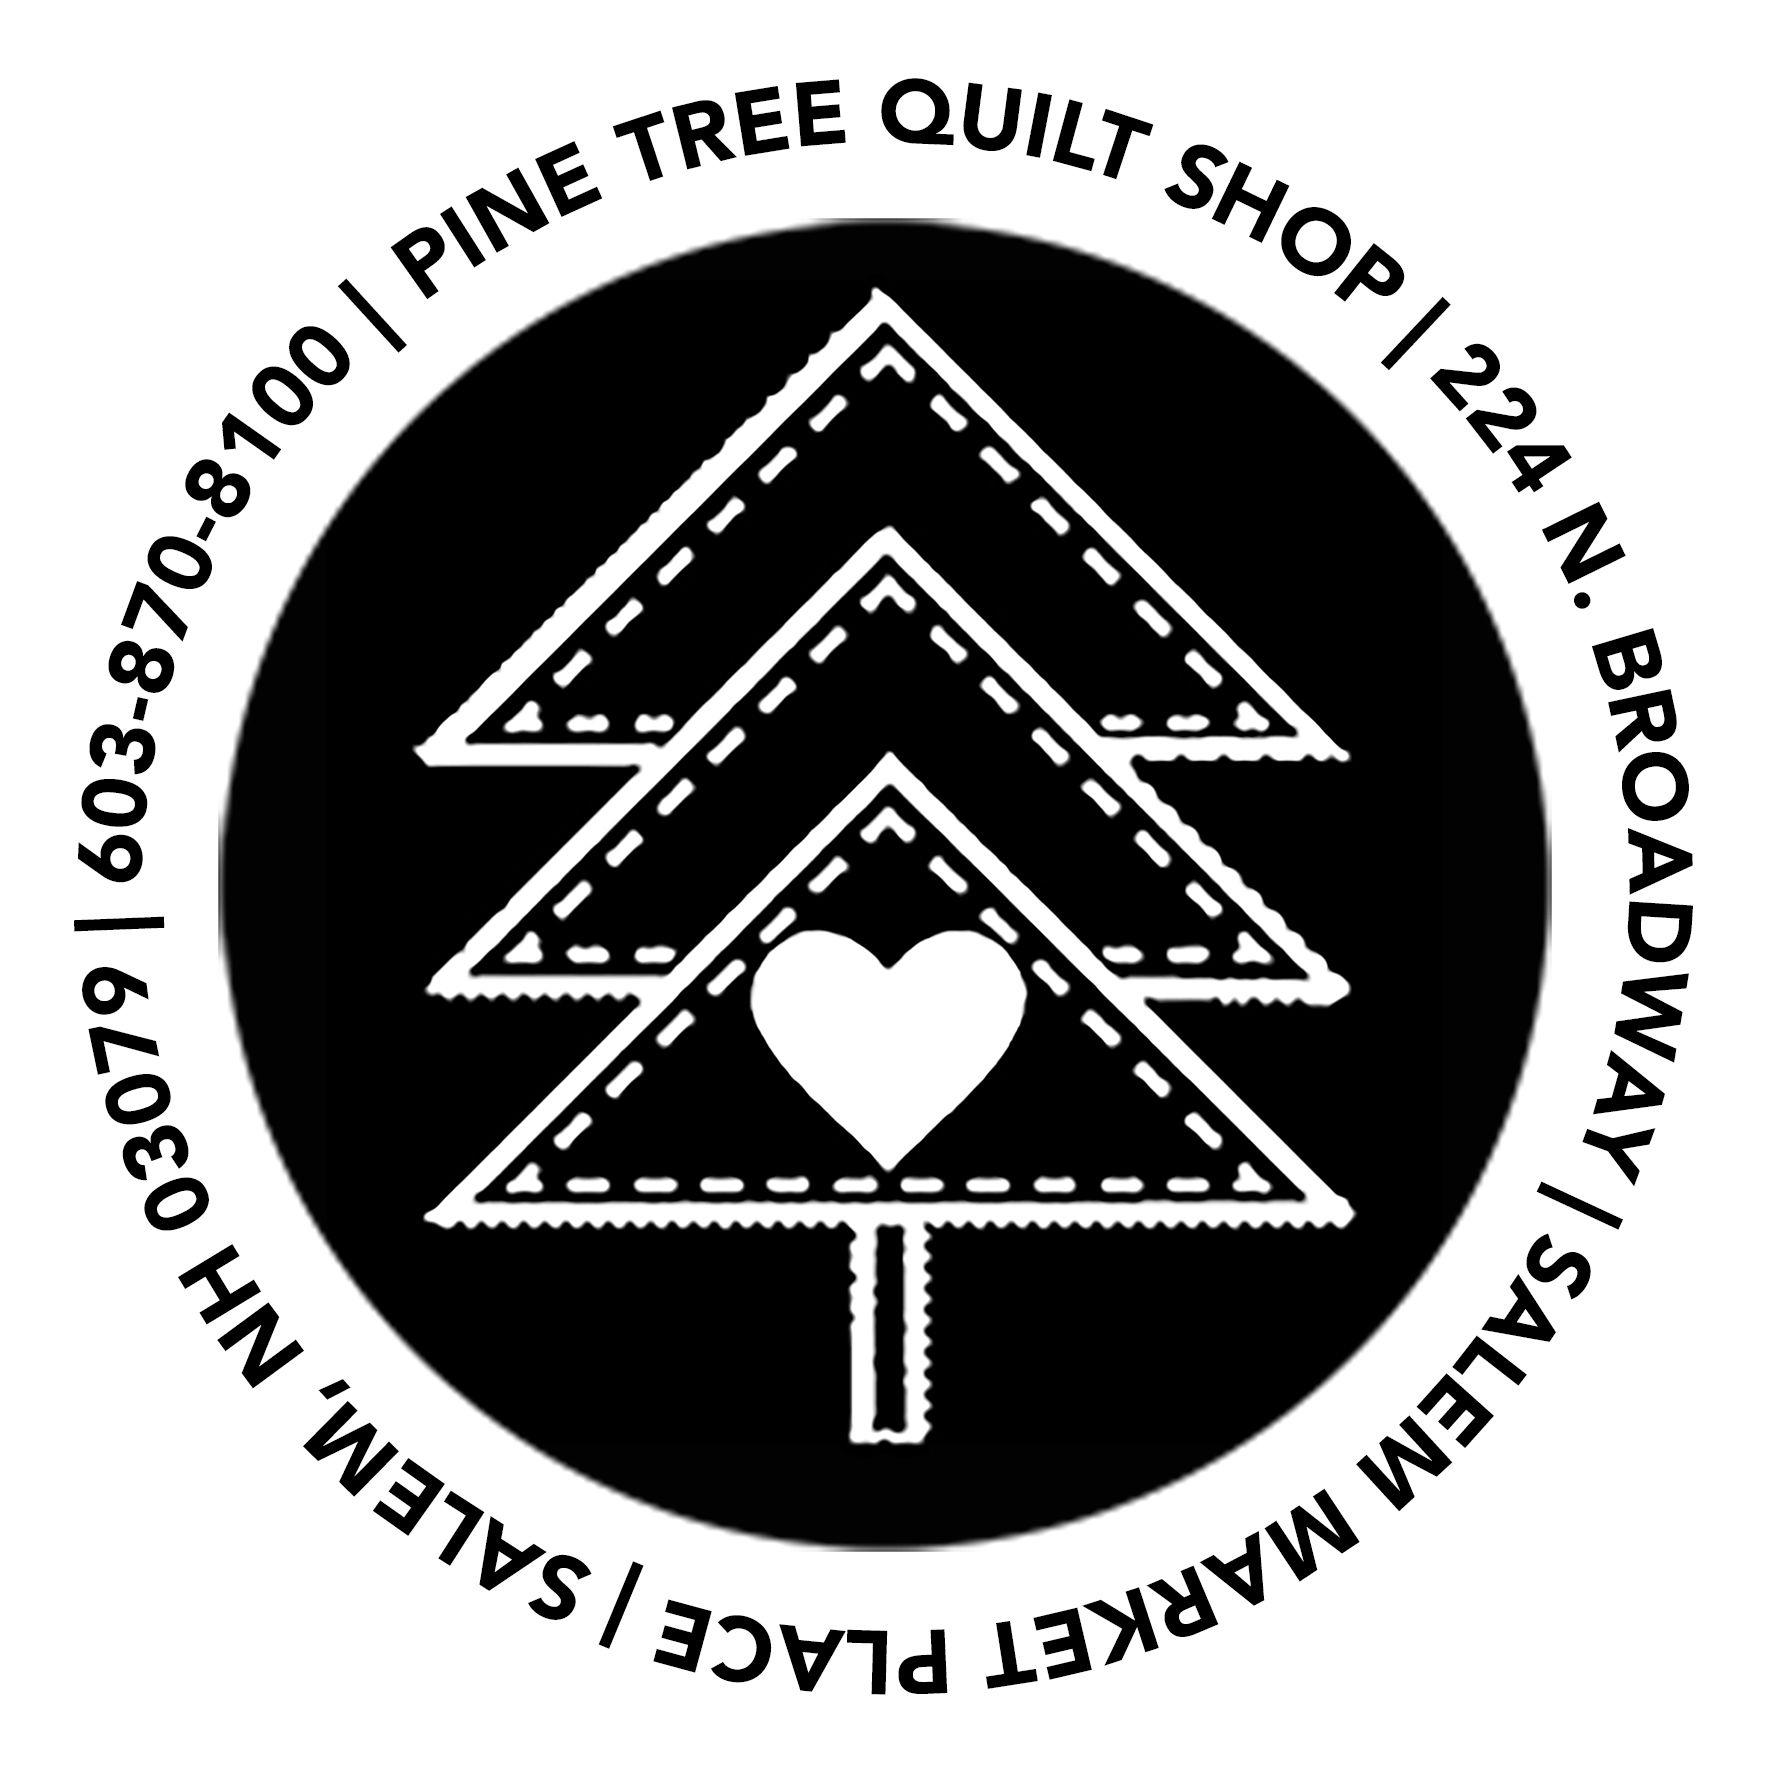 Pine Tree Circle Logo - Pine Tree Quilt Shop, Salem, NH